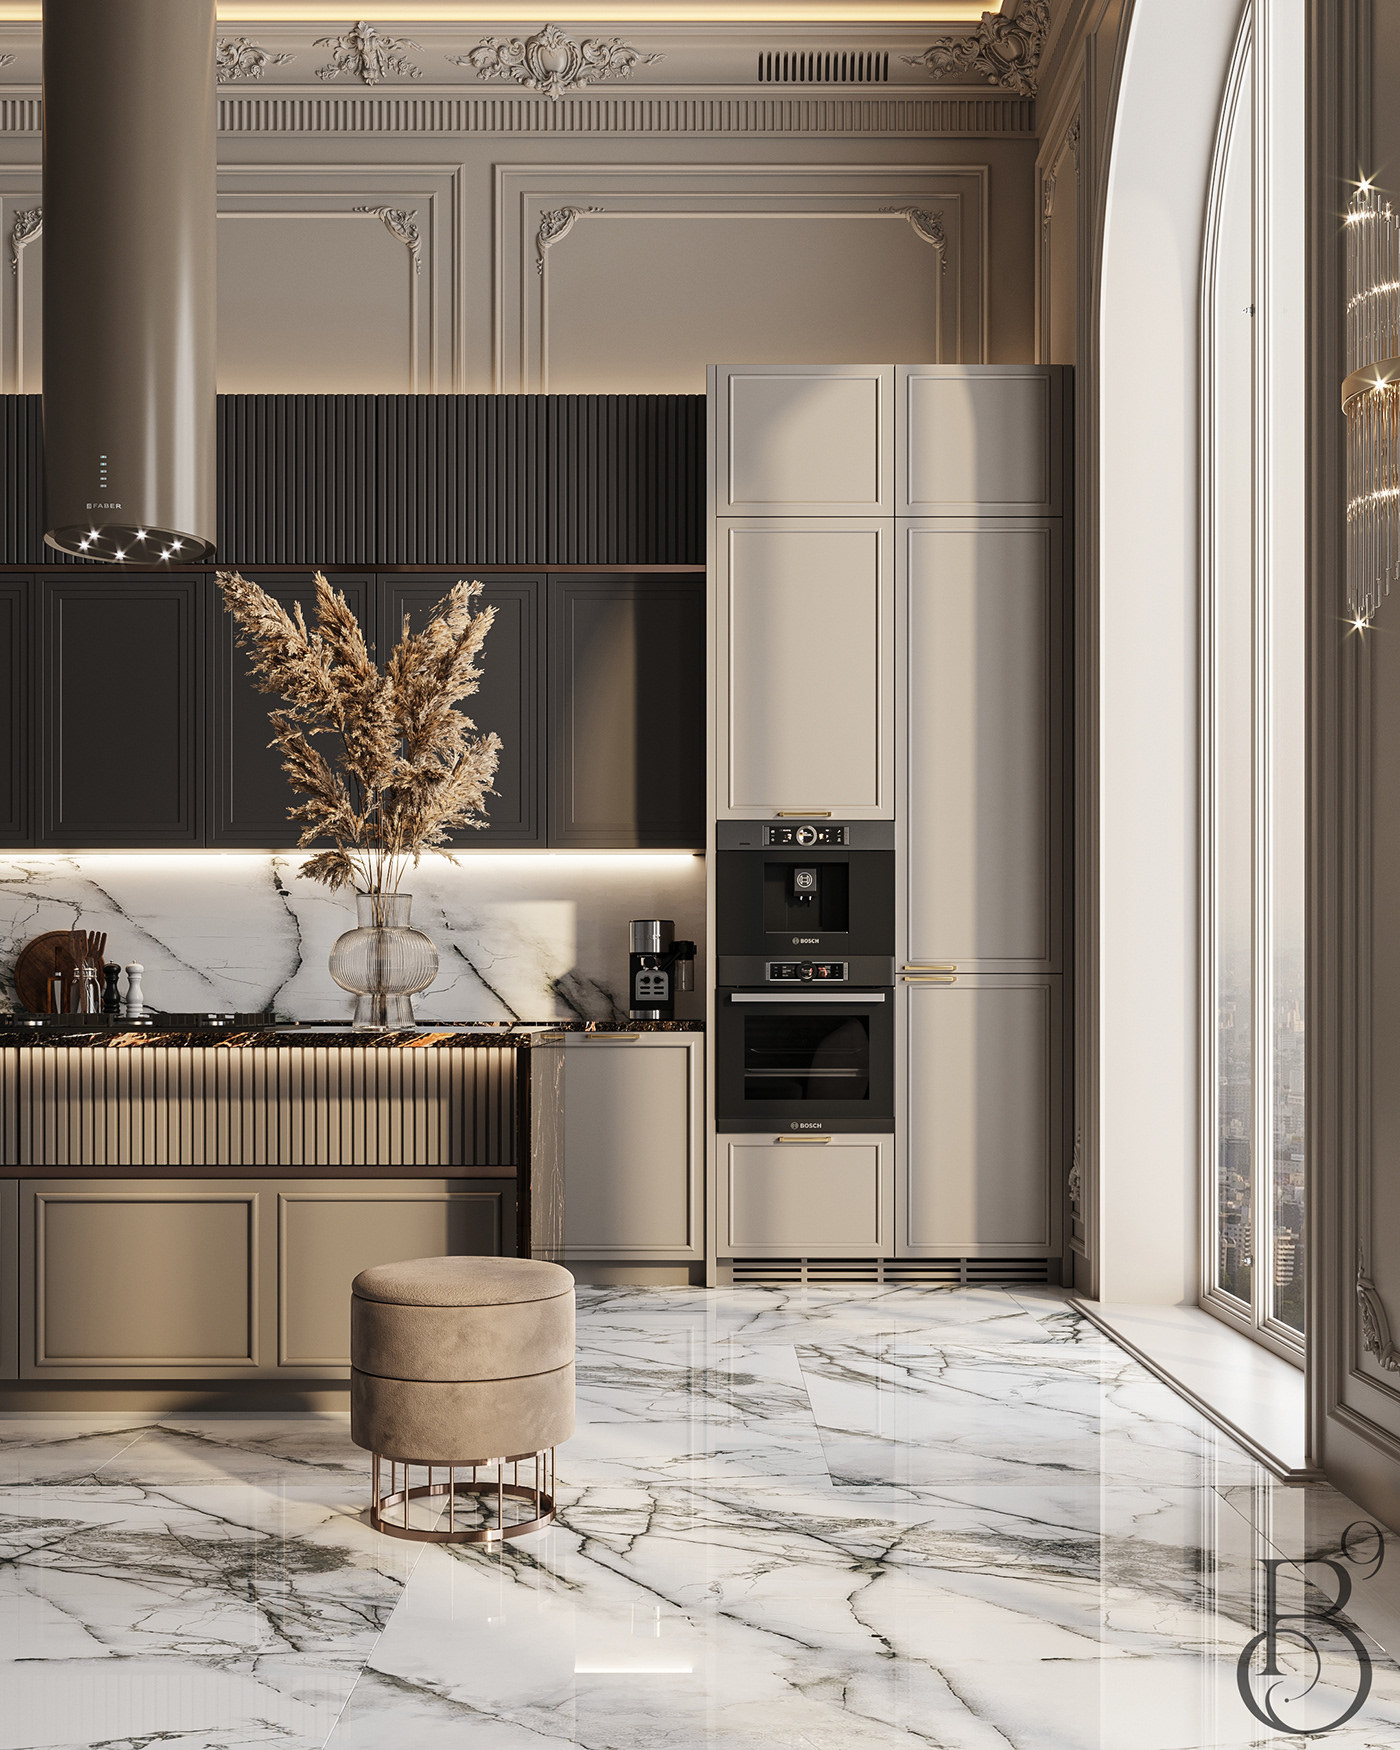 kitchen kitchen design Interior luxury modern elegant interior design  3ds max visualization Render